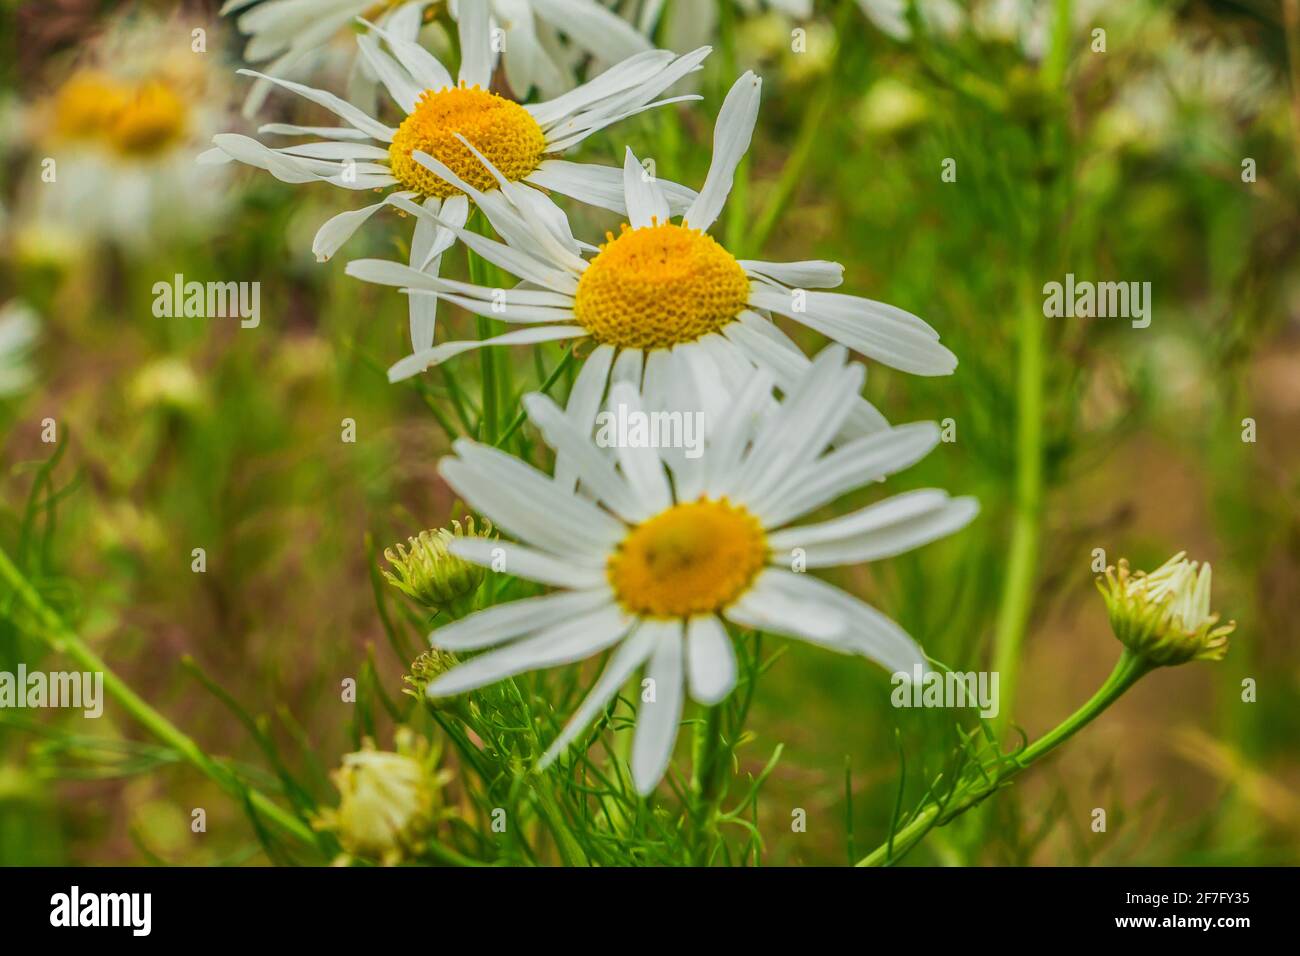 Wildblumen auf einem Feld. Blühende Kamille mit drei Blüten. Weiße Blütenblätter und gelbe Stollen mit Pollen. Blütenstängel und grünes Gras Stockfoto